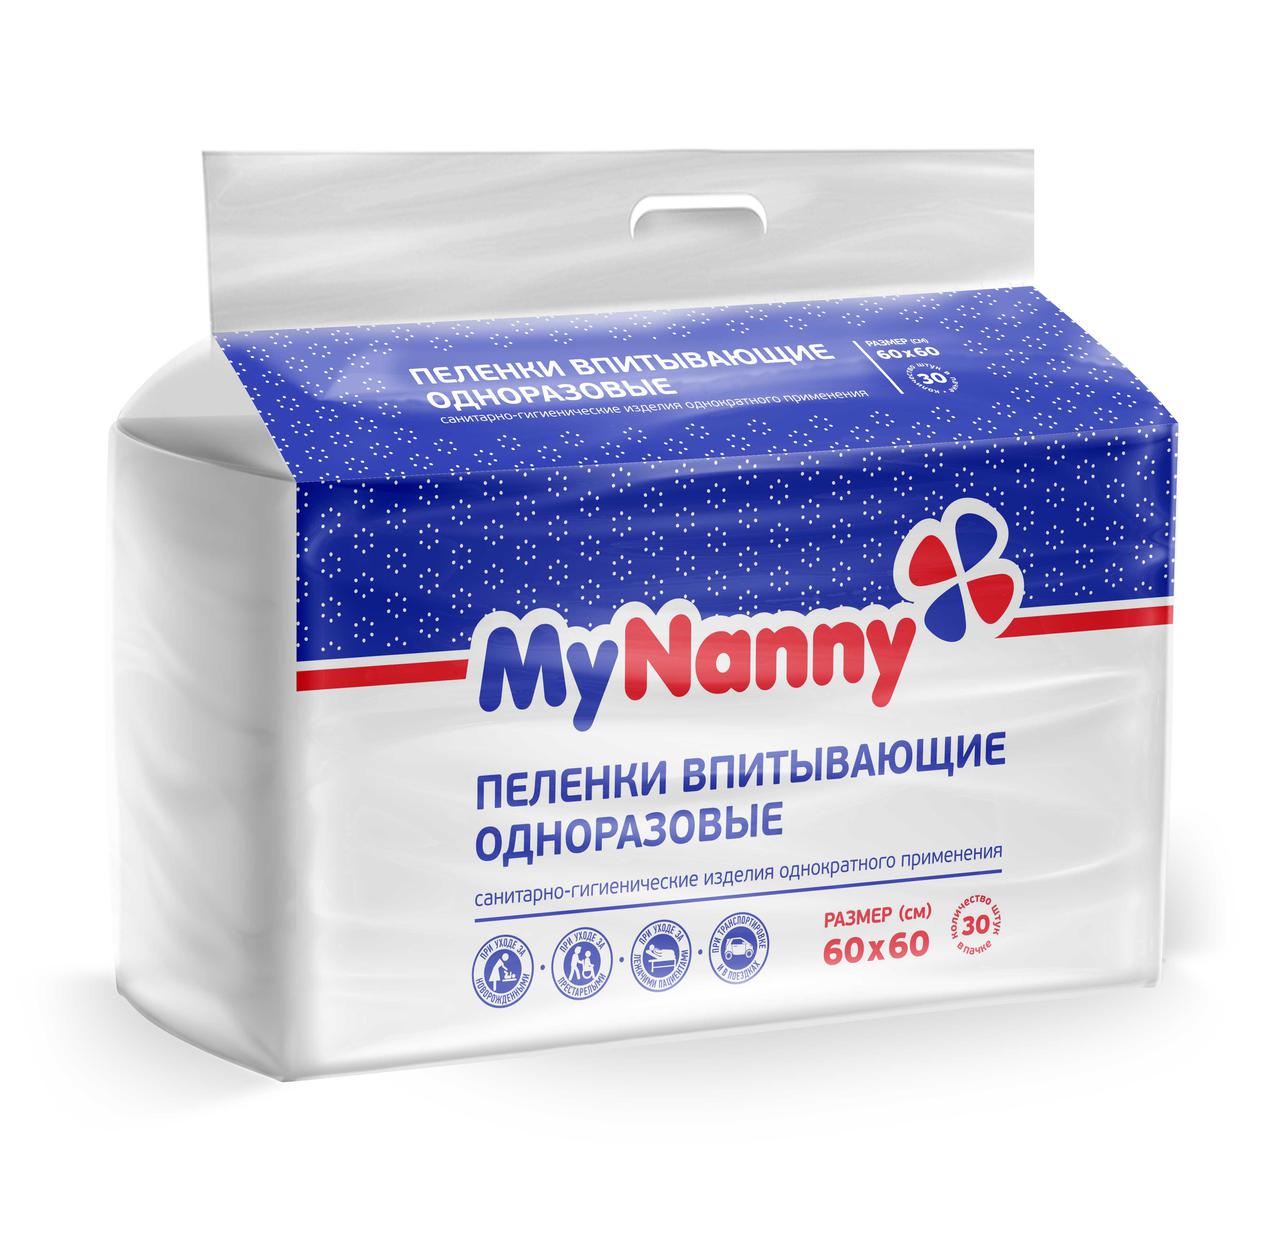 Пеленка впитывающая одноразовая My Nanny  Luxe "МЕДМИЛ"   60*60 см. по 30 шт.